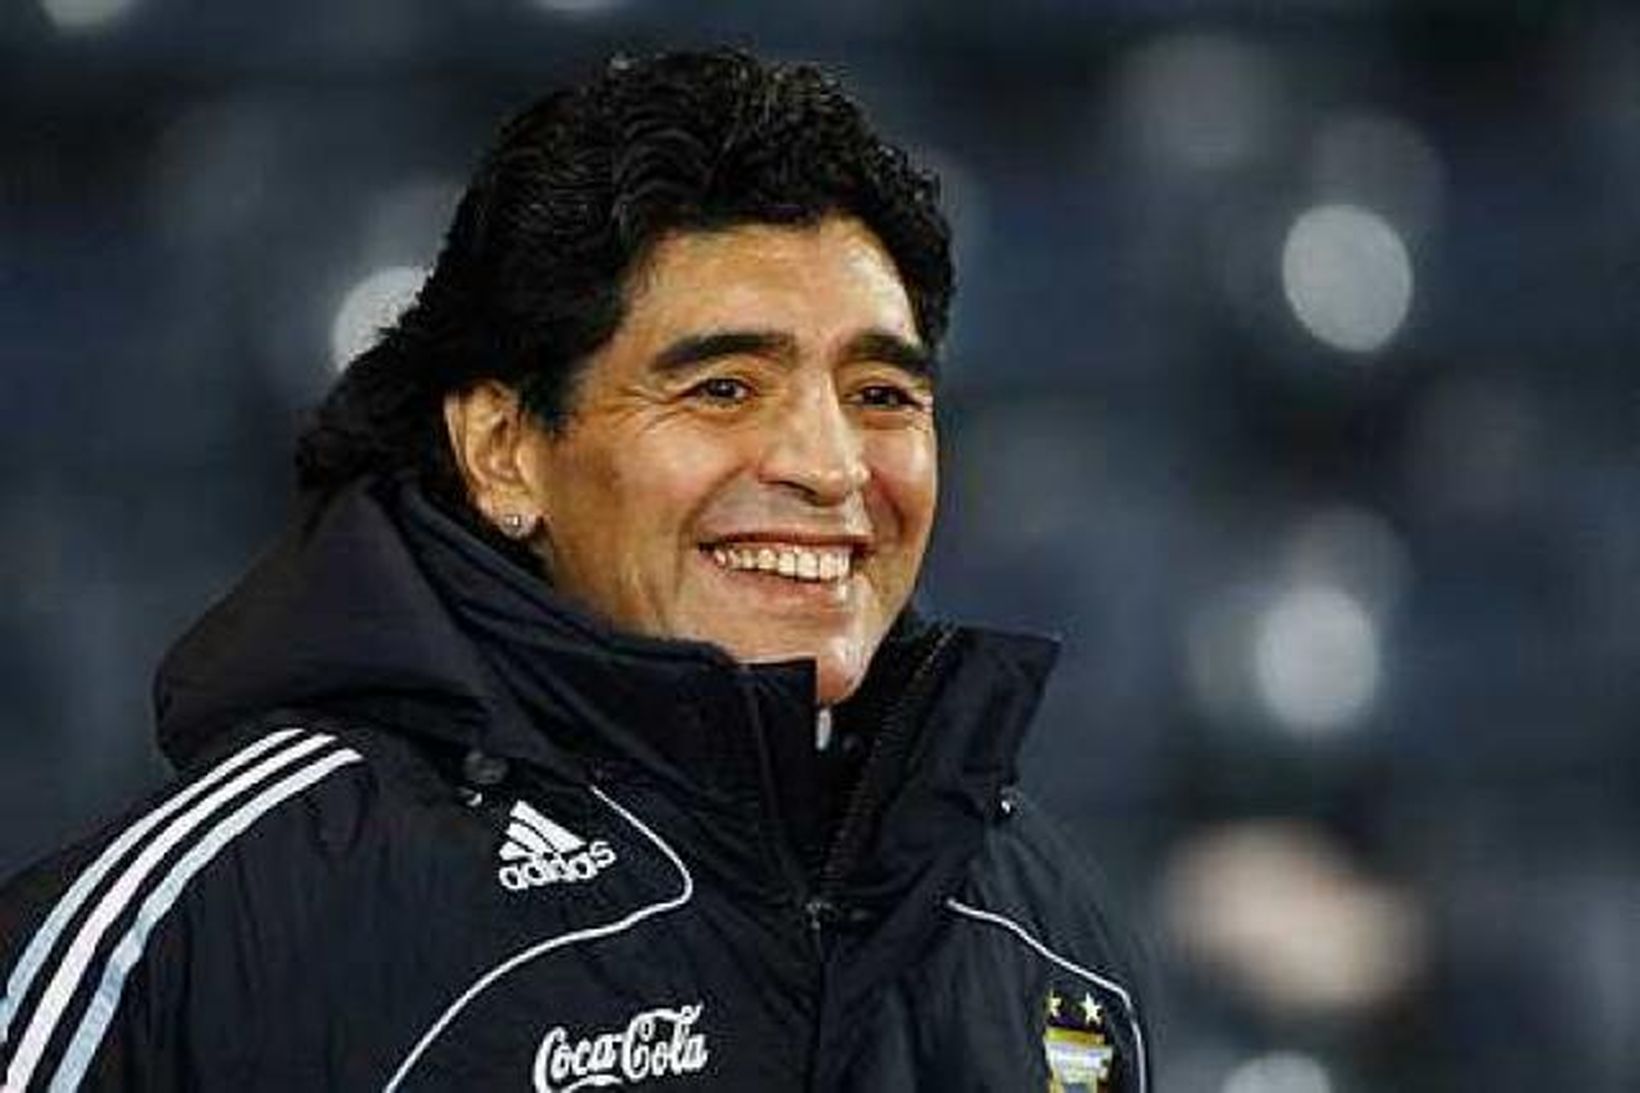 Maradona er góðvinur Fidel Castro og fær reglulega Kúbuvindla frá …